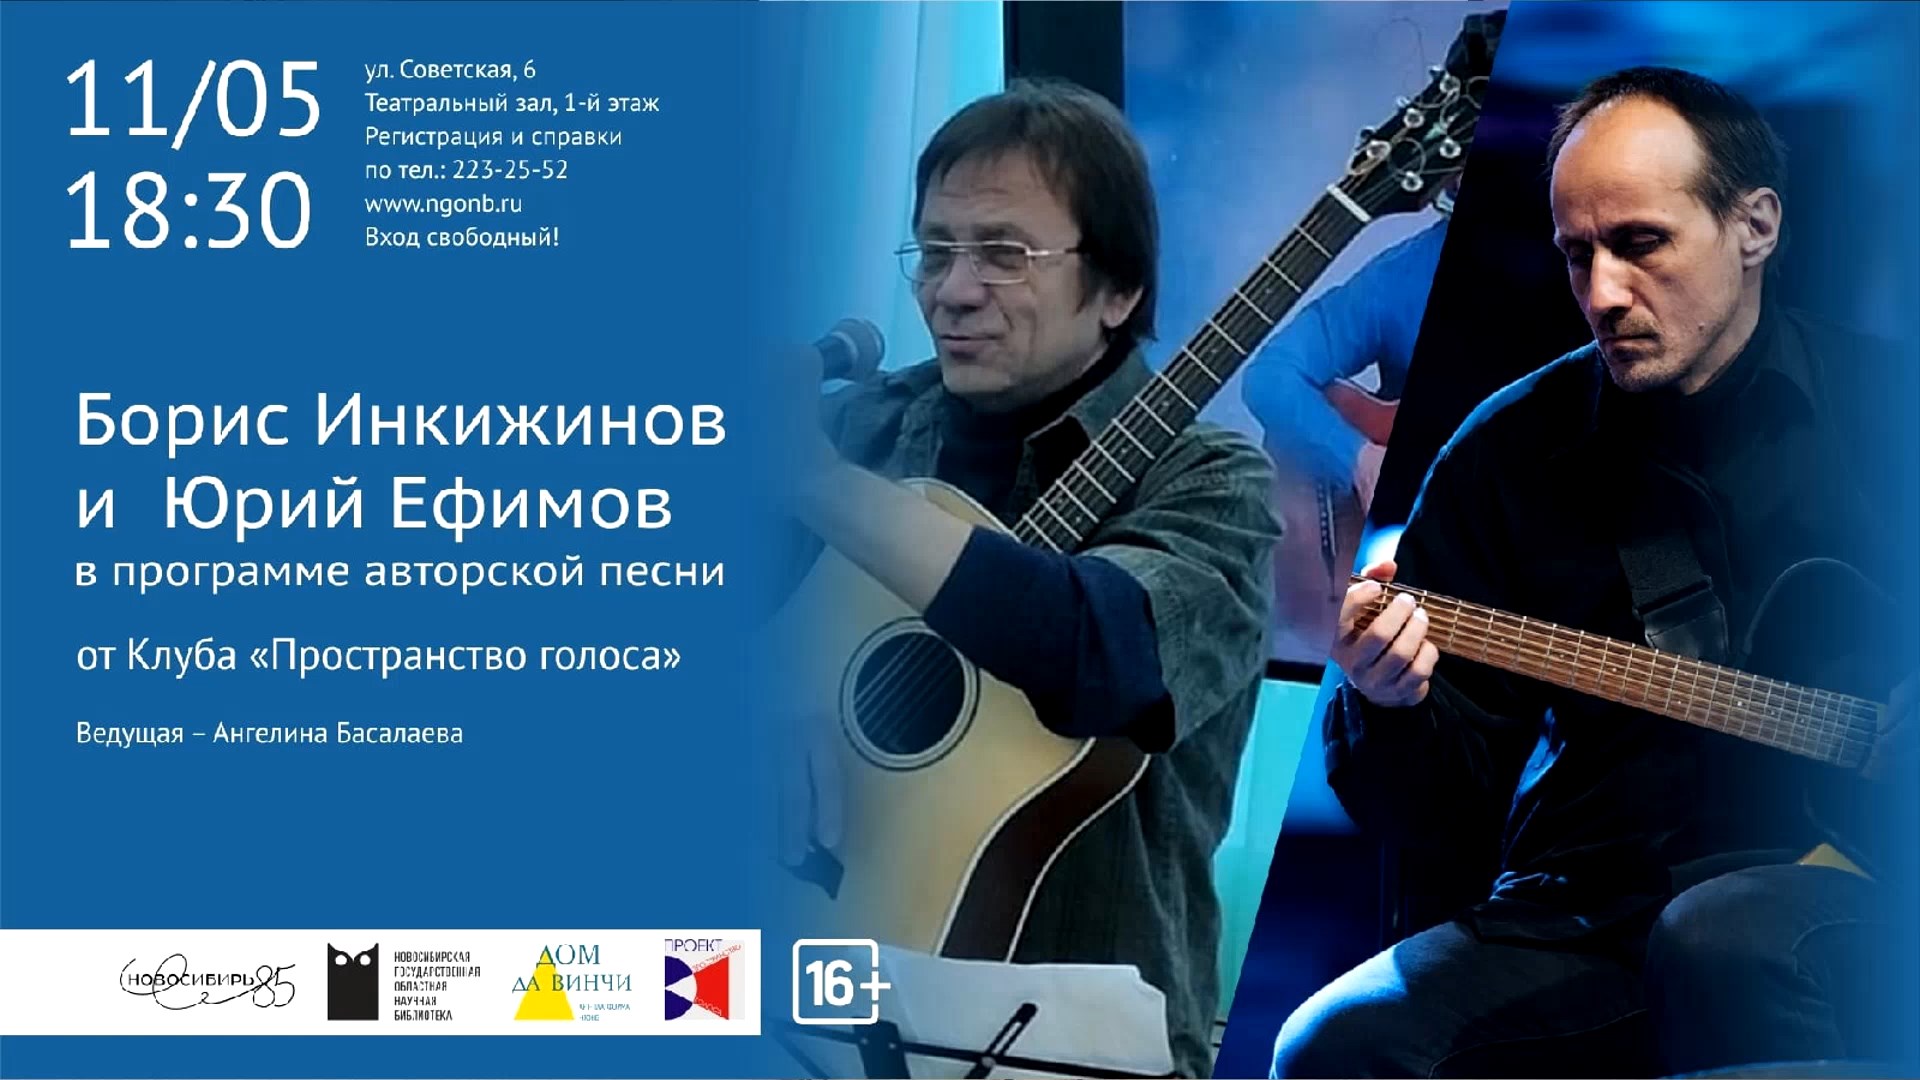 Авторская песня от Клуба «Пространство голоса»: Борис Инкижинов и Юрий Ефимов